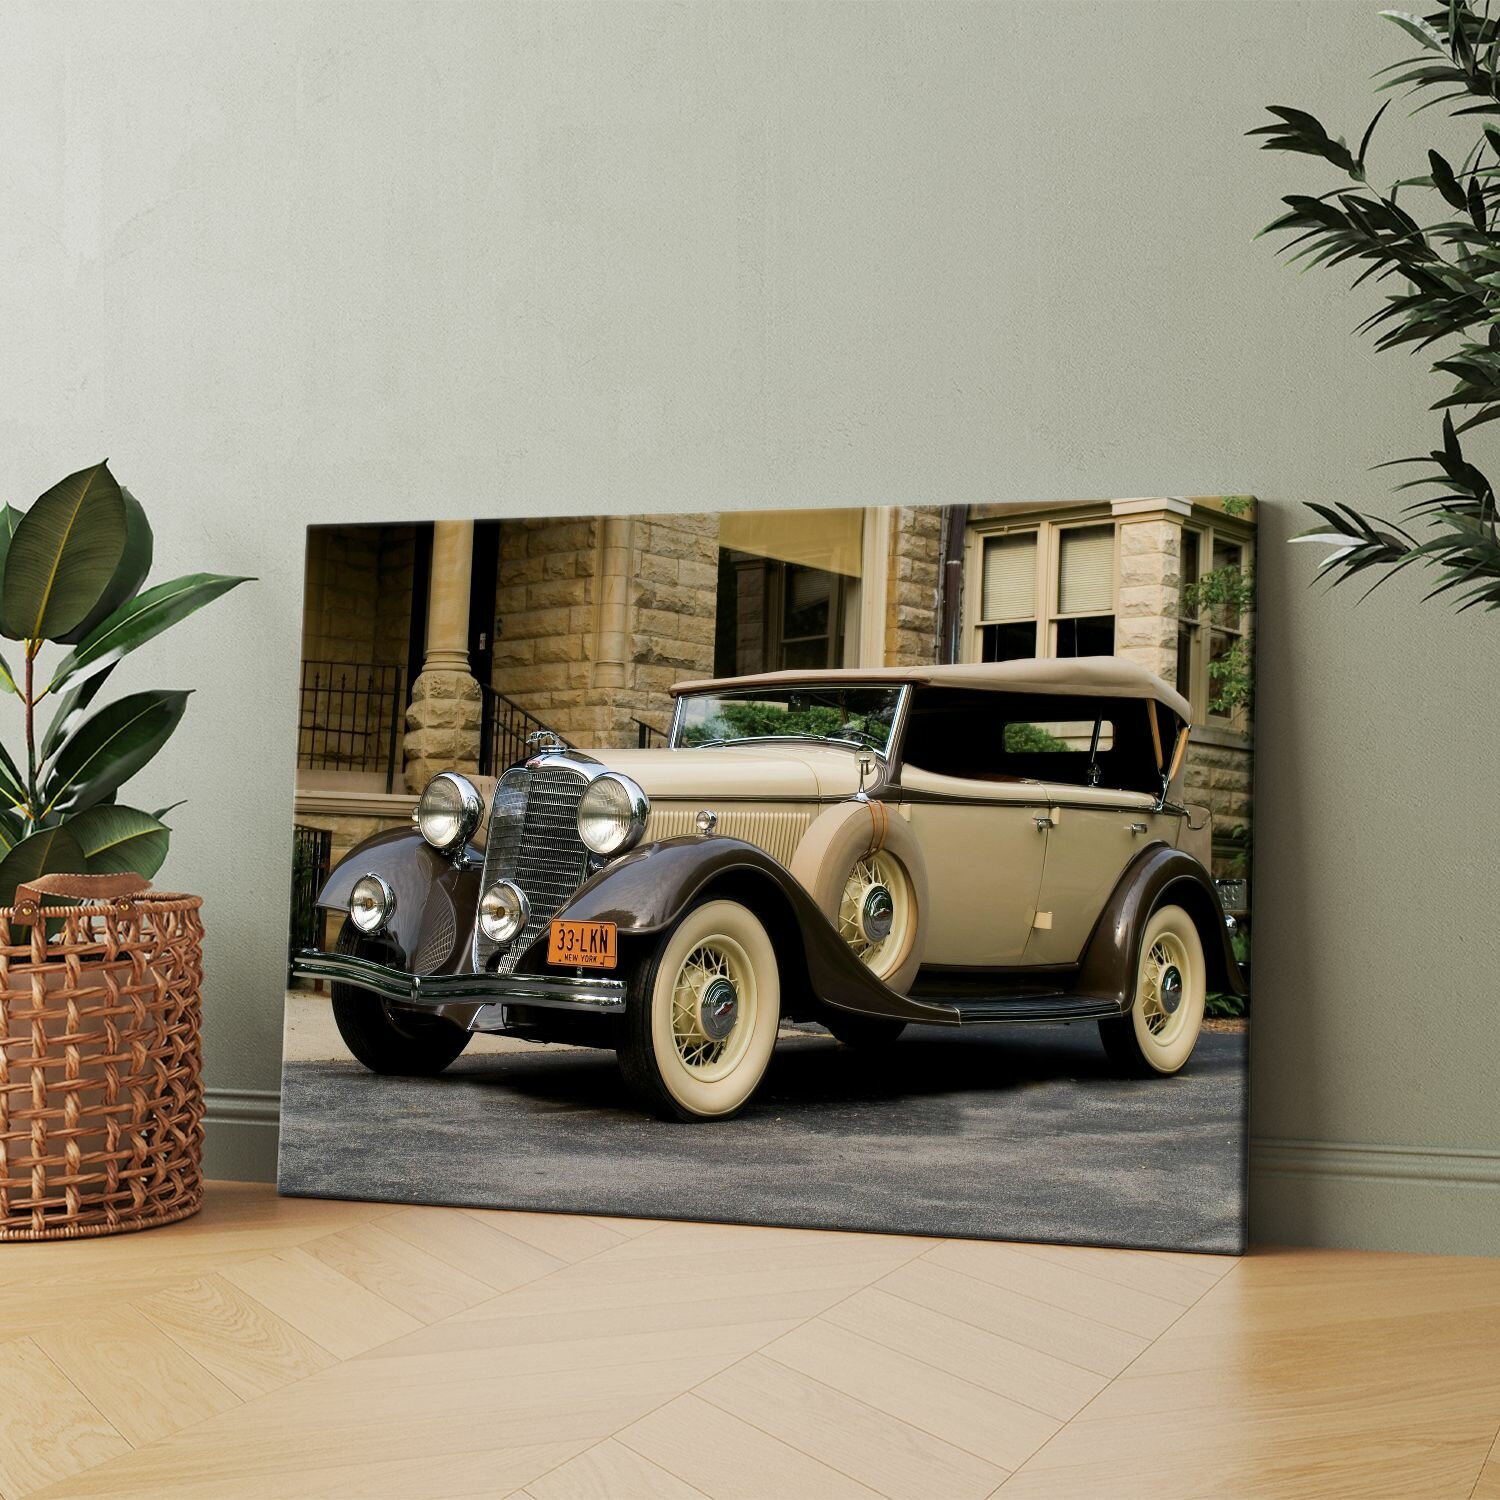 Картина на холсте (Ретро авто, старинный автомобиль, раритетные машины) 60x80 см. Интерьерная, на стену.